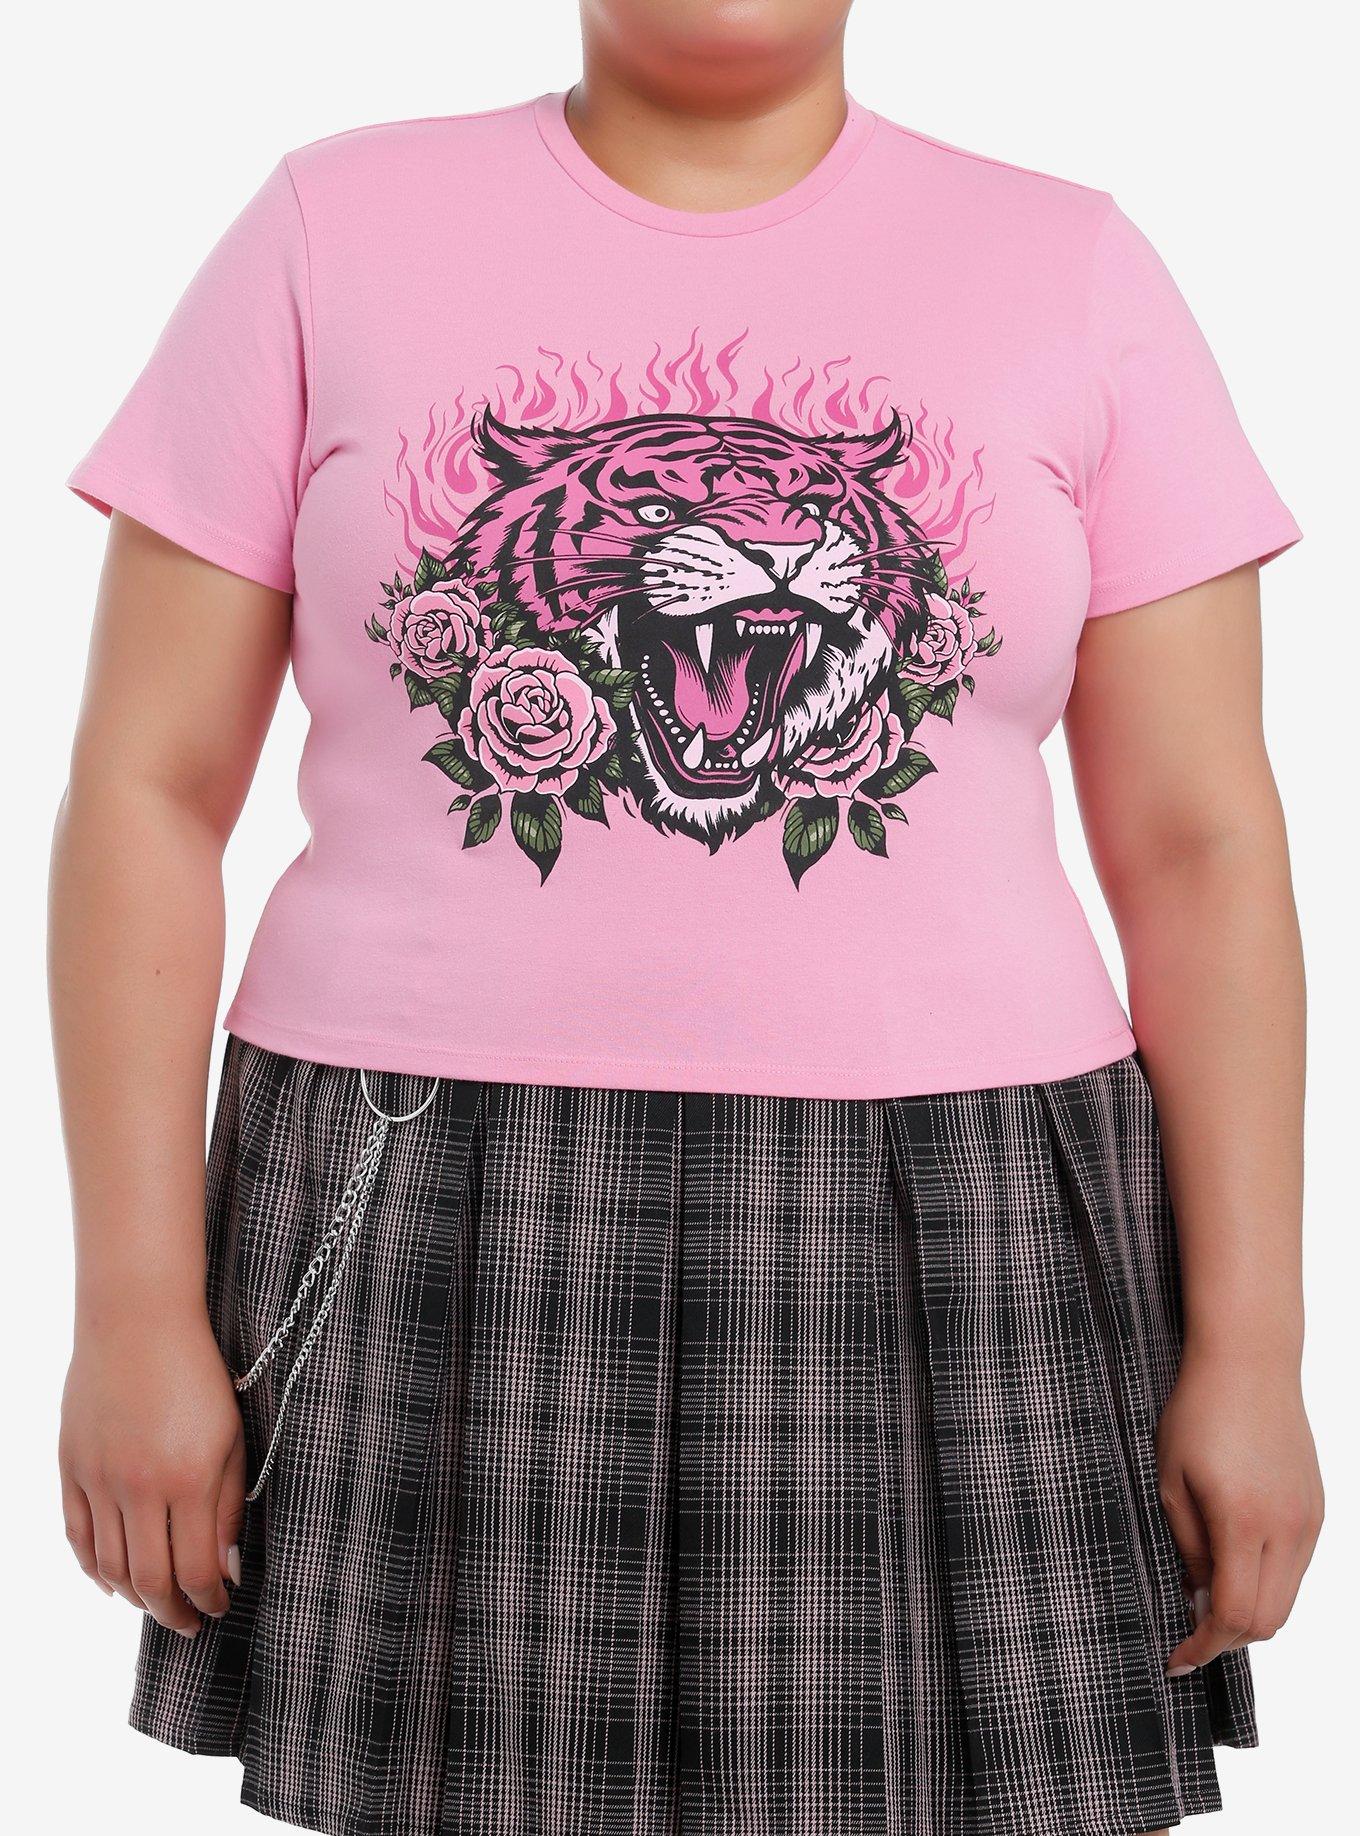 Sweet Society Roaring Tiger Pink Girls Baby T-Shirt Plus Size, PINK, hi-res